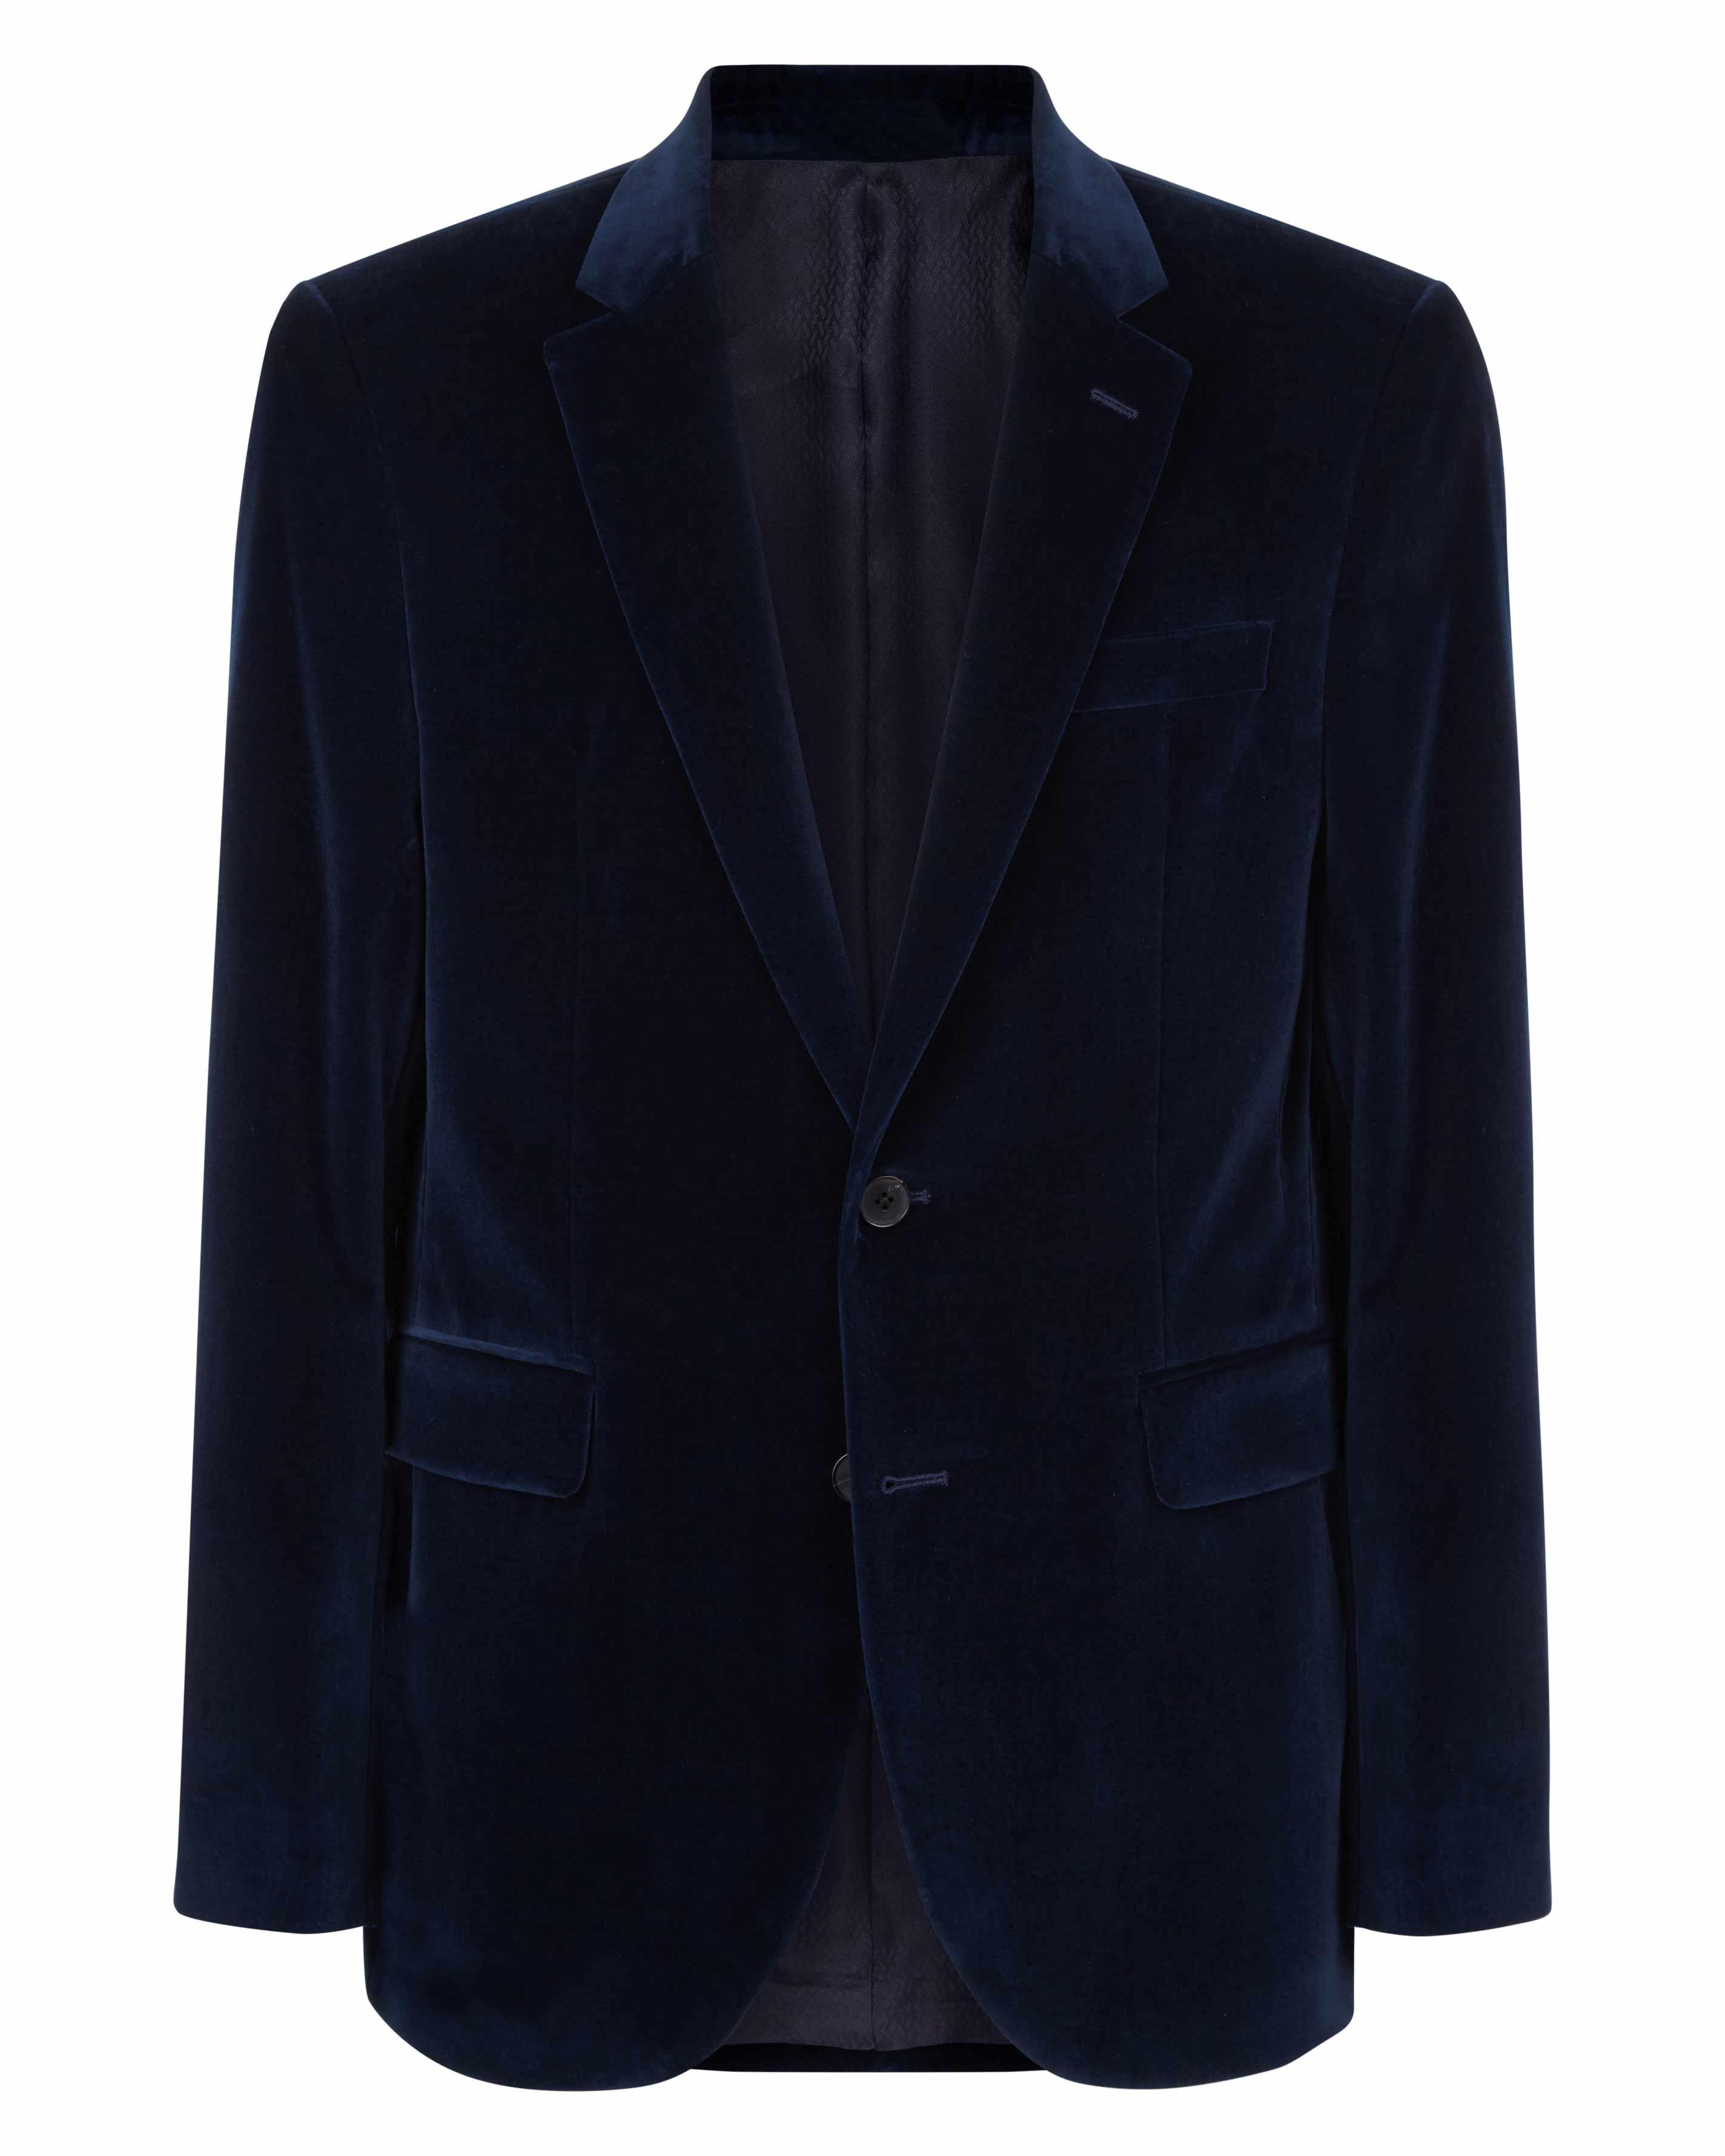 Lyst - Jaeger Velvet Jacket in Blue for Men